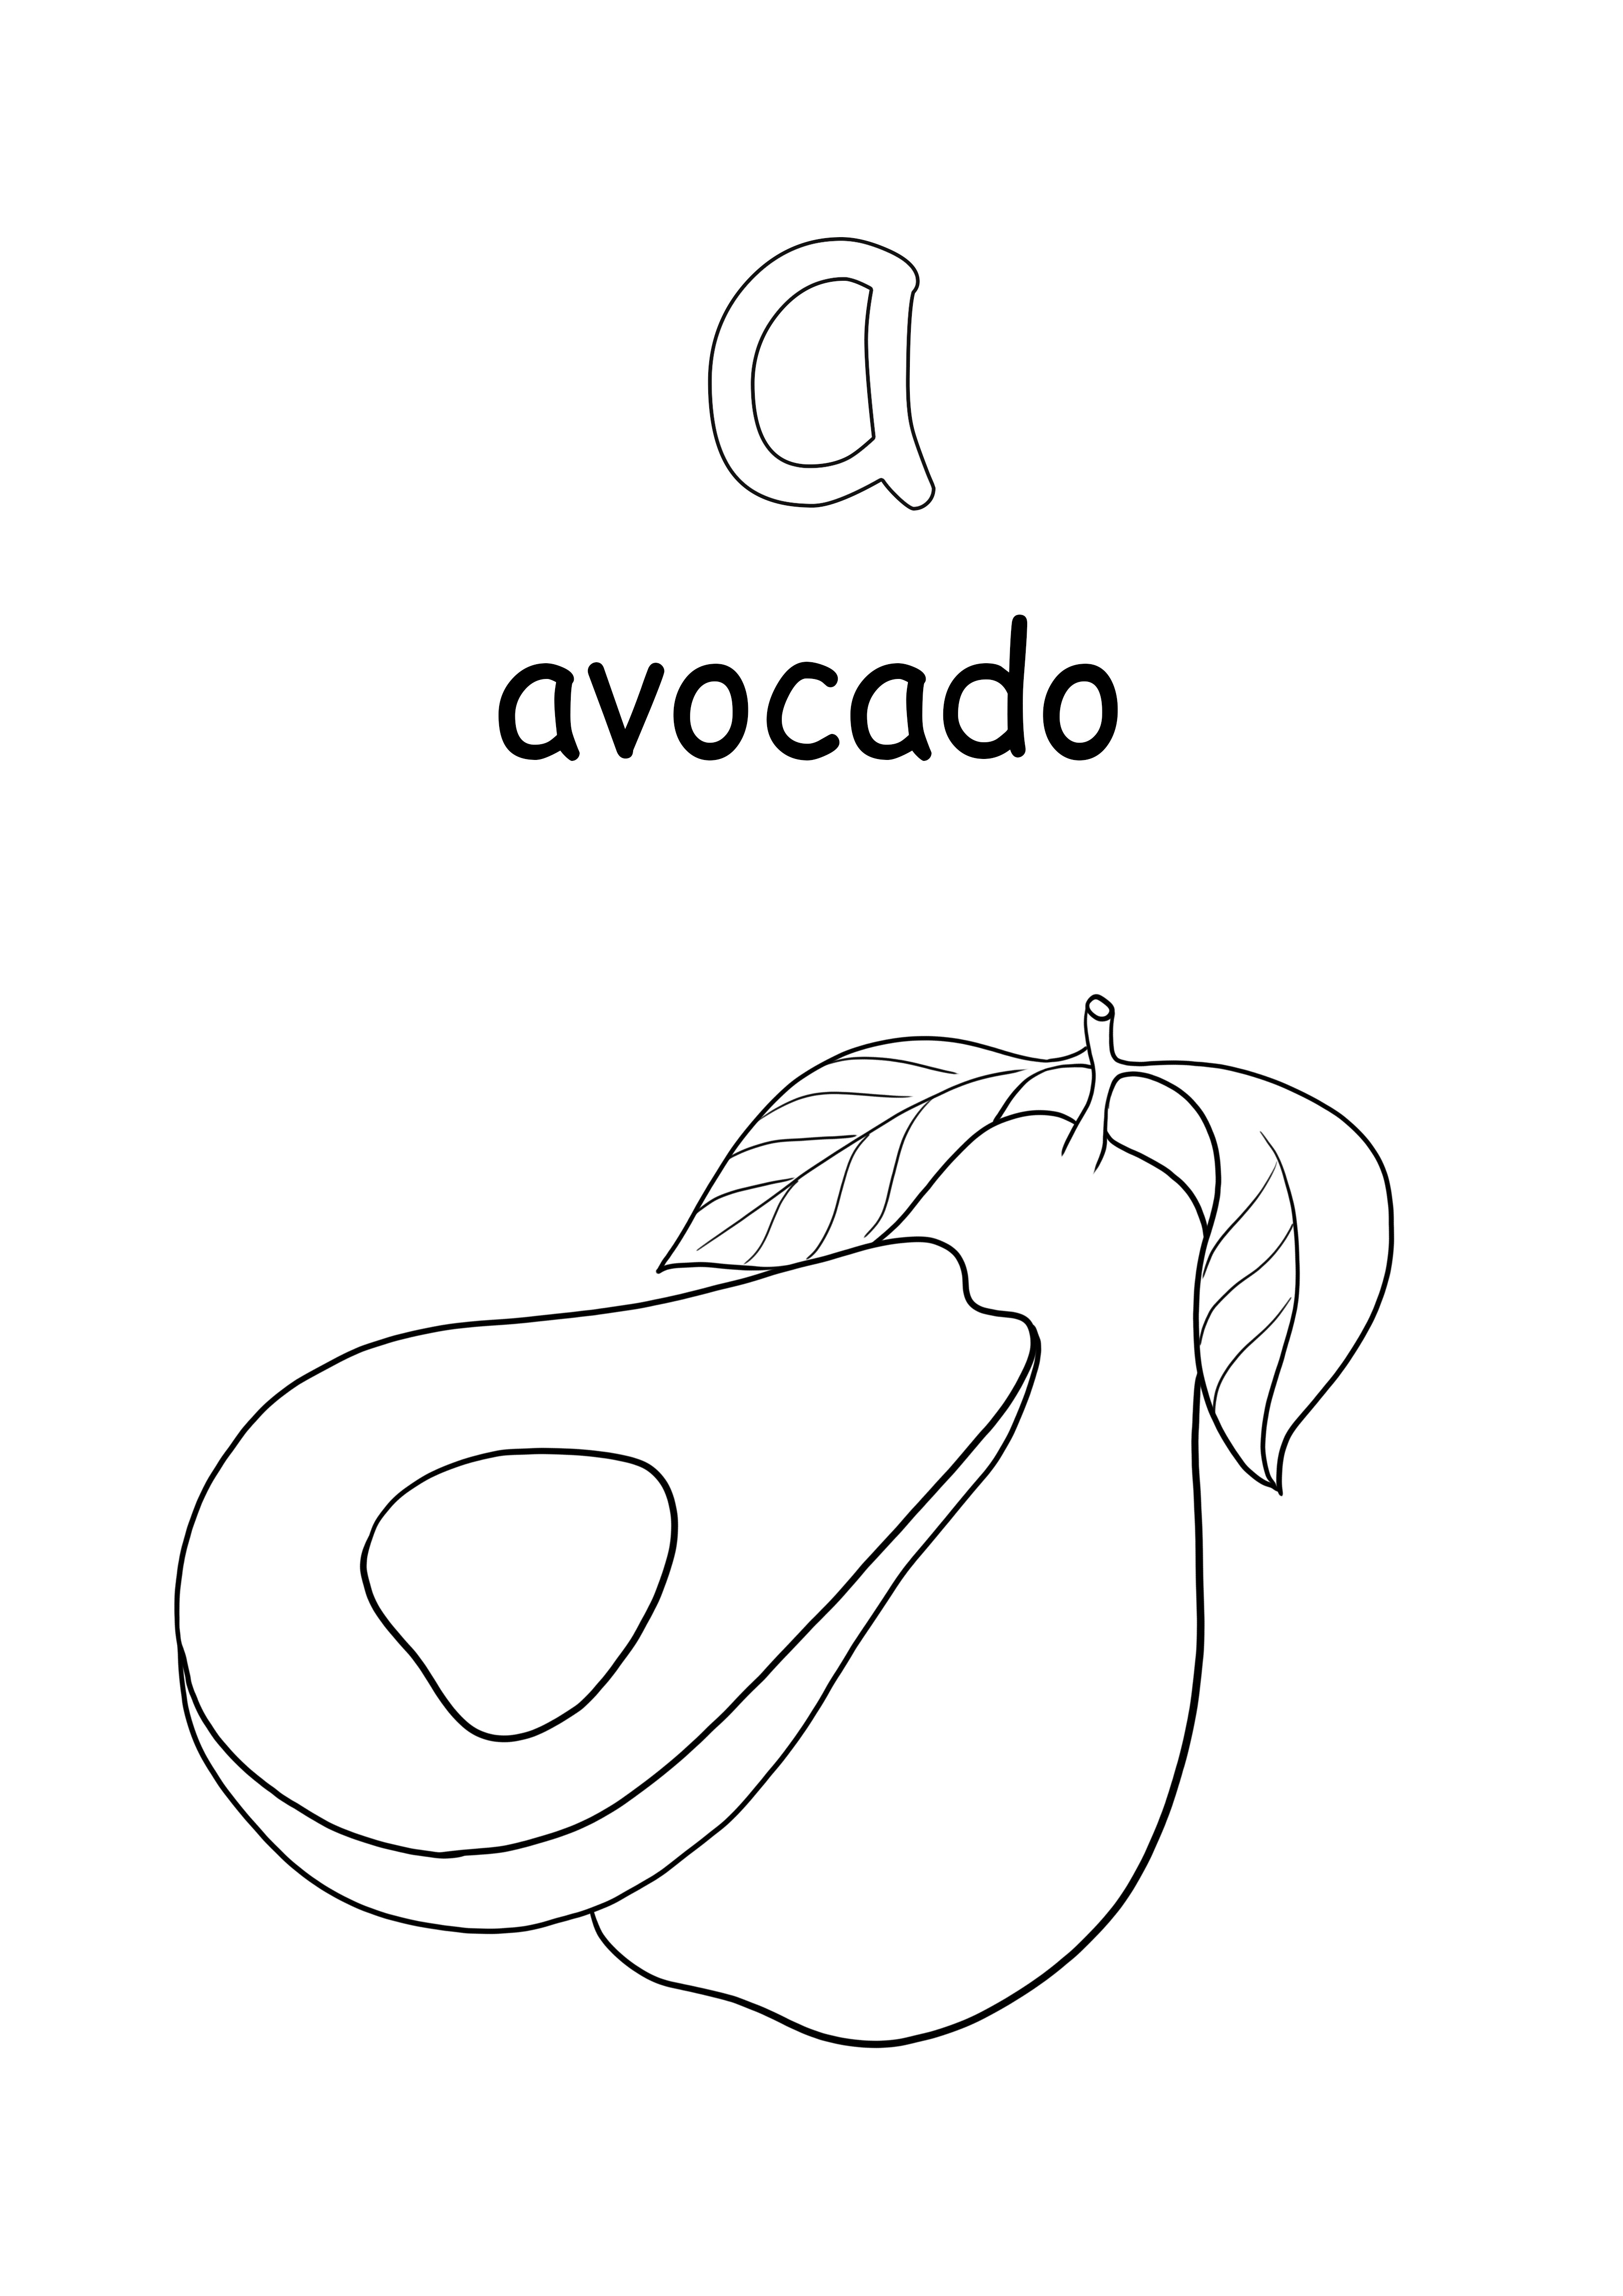 Kleinbuchstaben und Avocado-Wort zum Ausmalen und Drucken